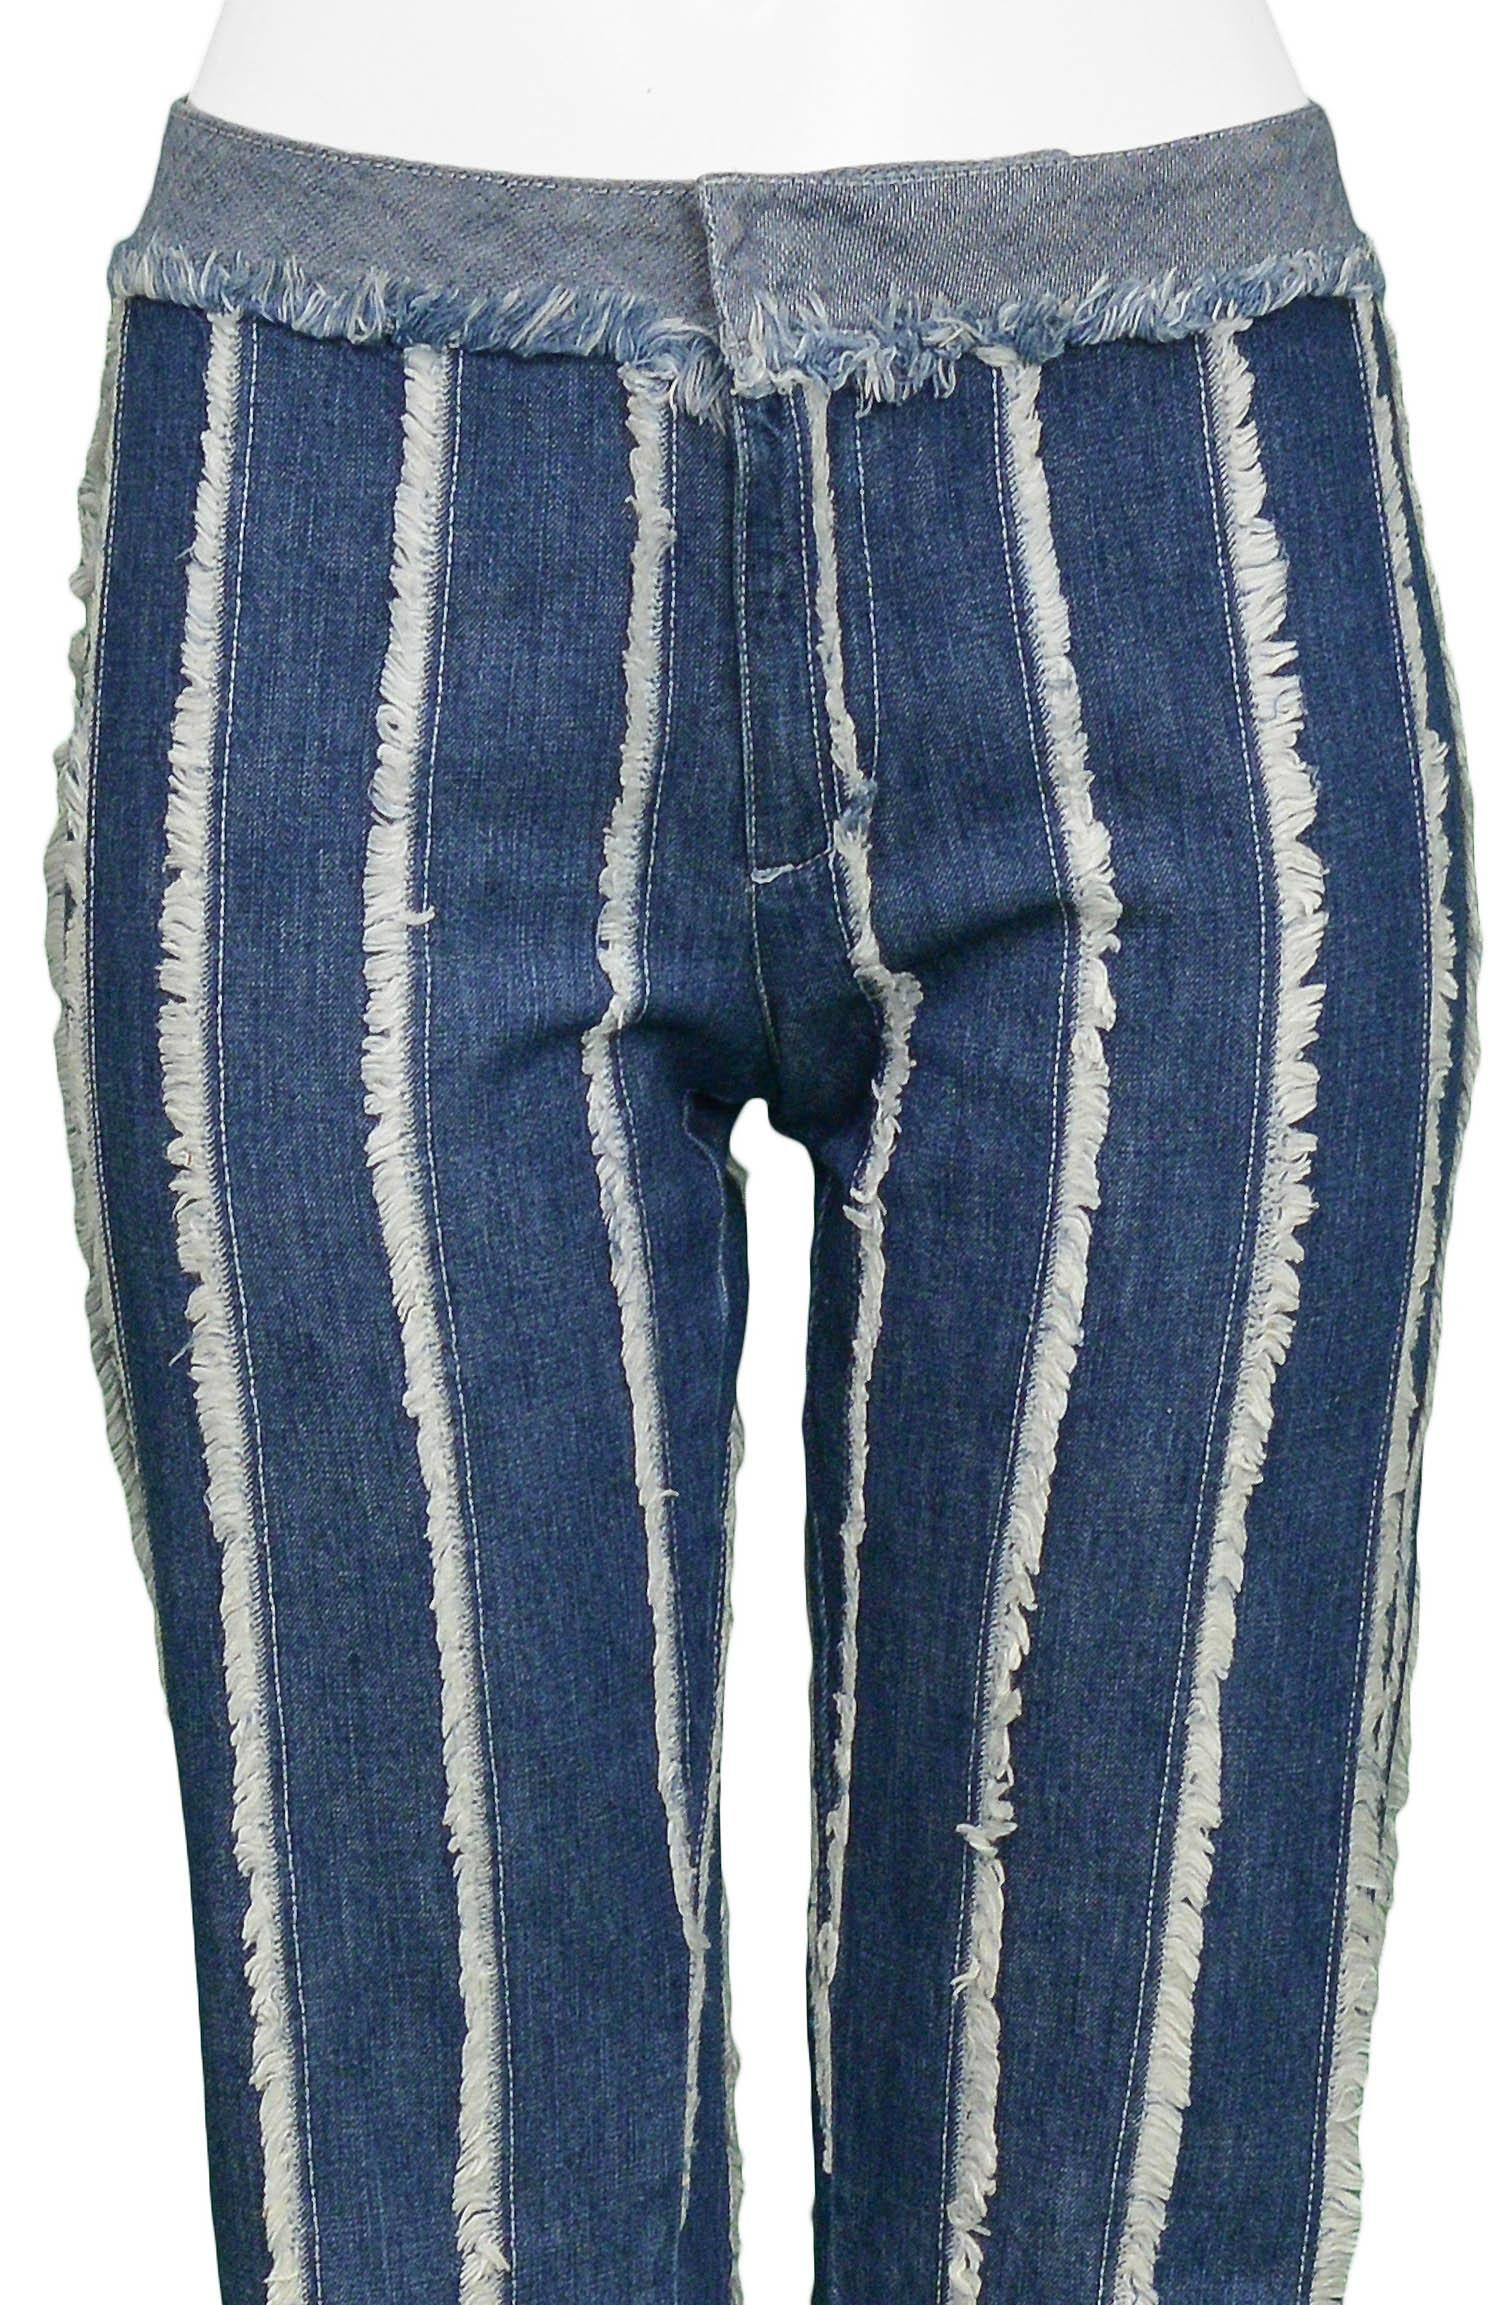 Purple Jean Paul Gaultier Vintage Striped Jeans